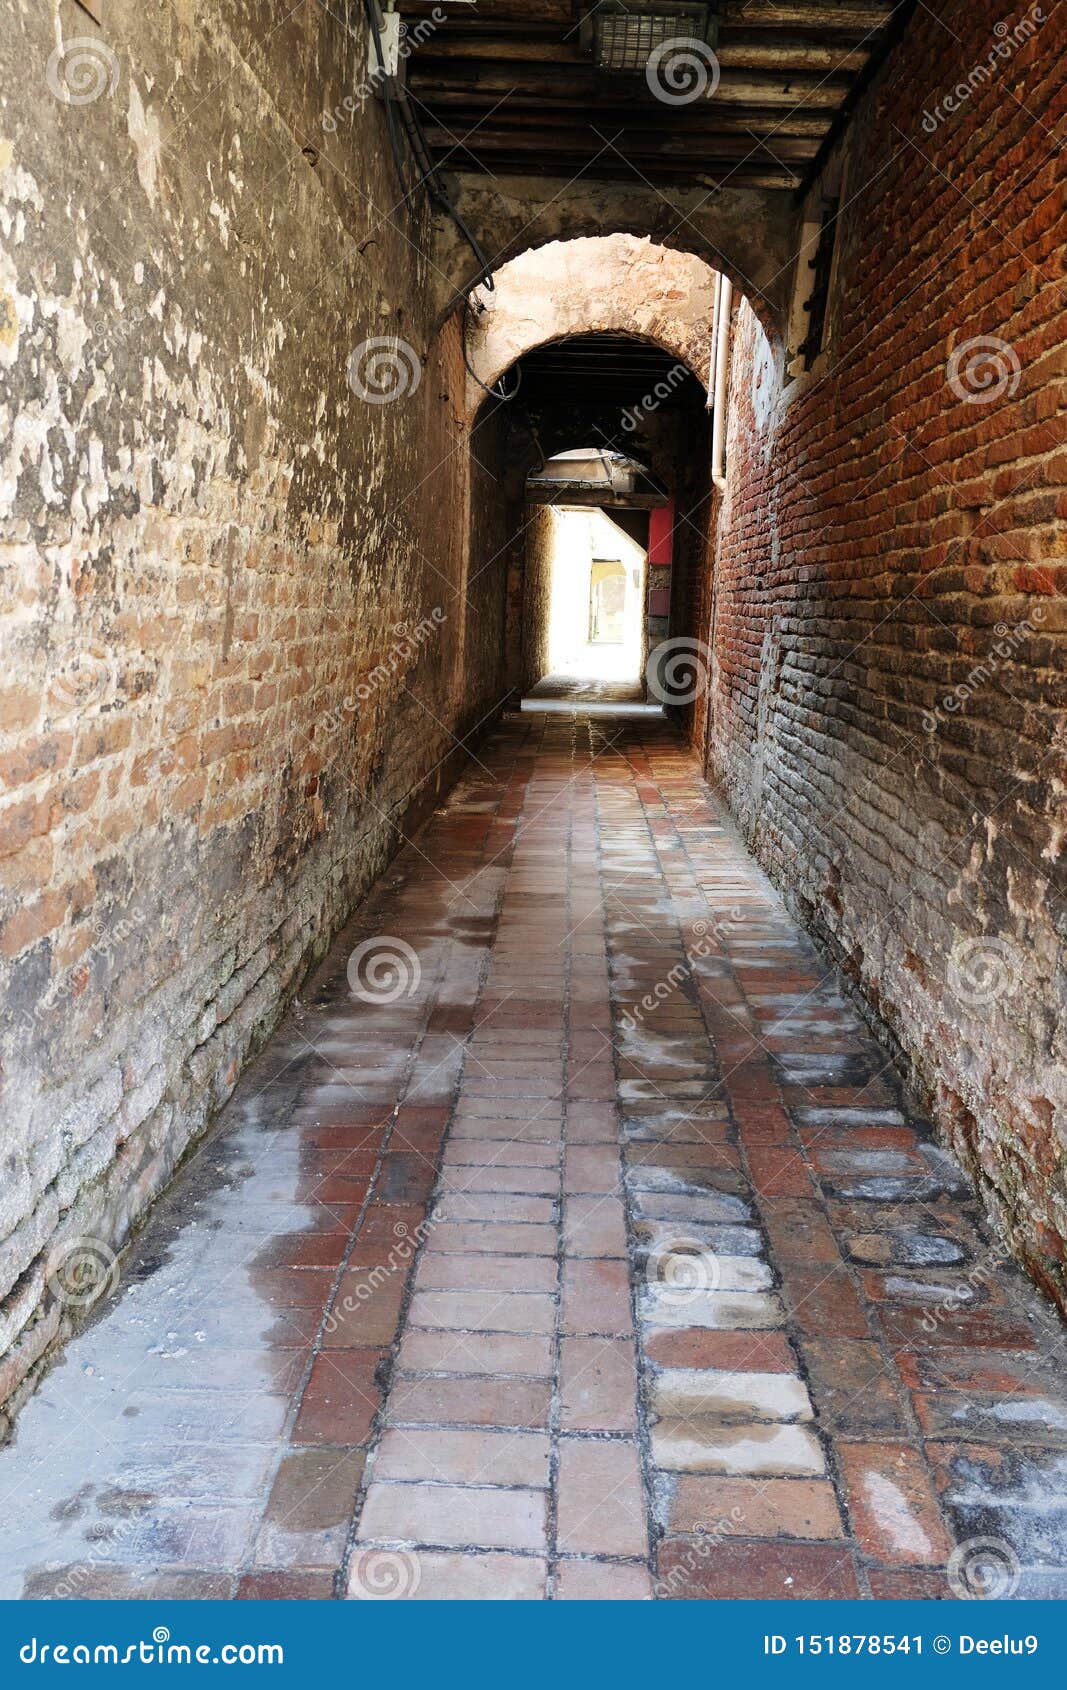 empty narrow italian alleywayin venice, italy